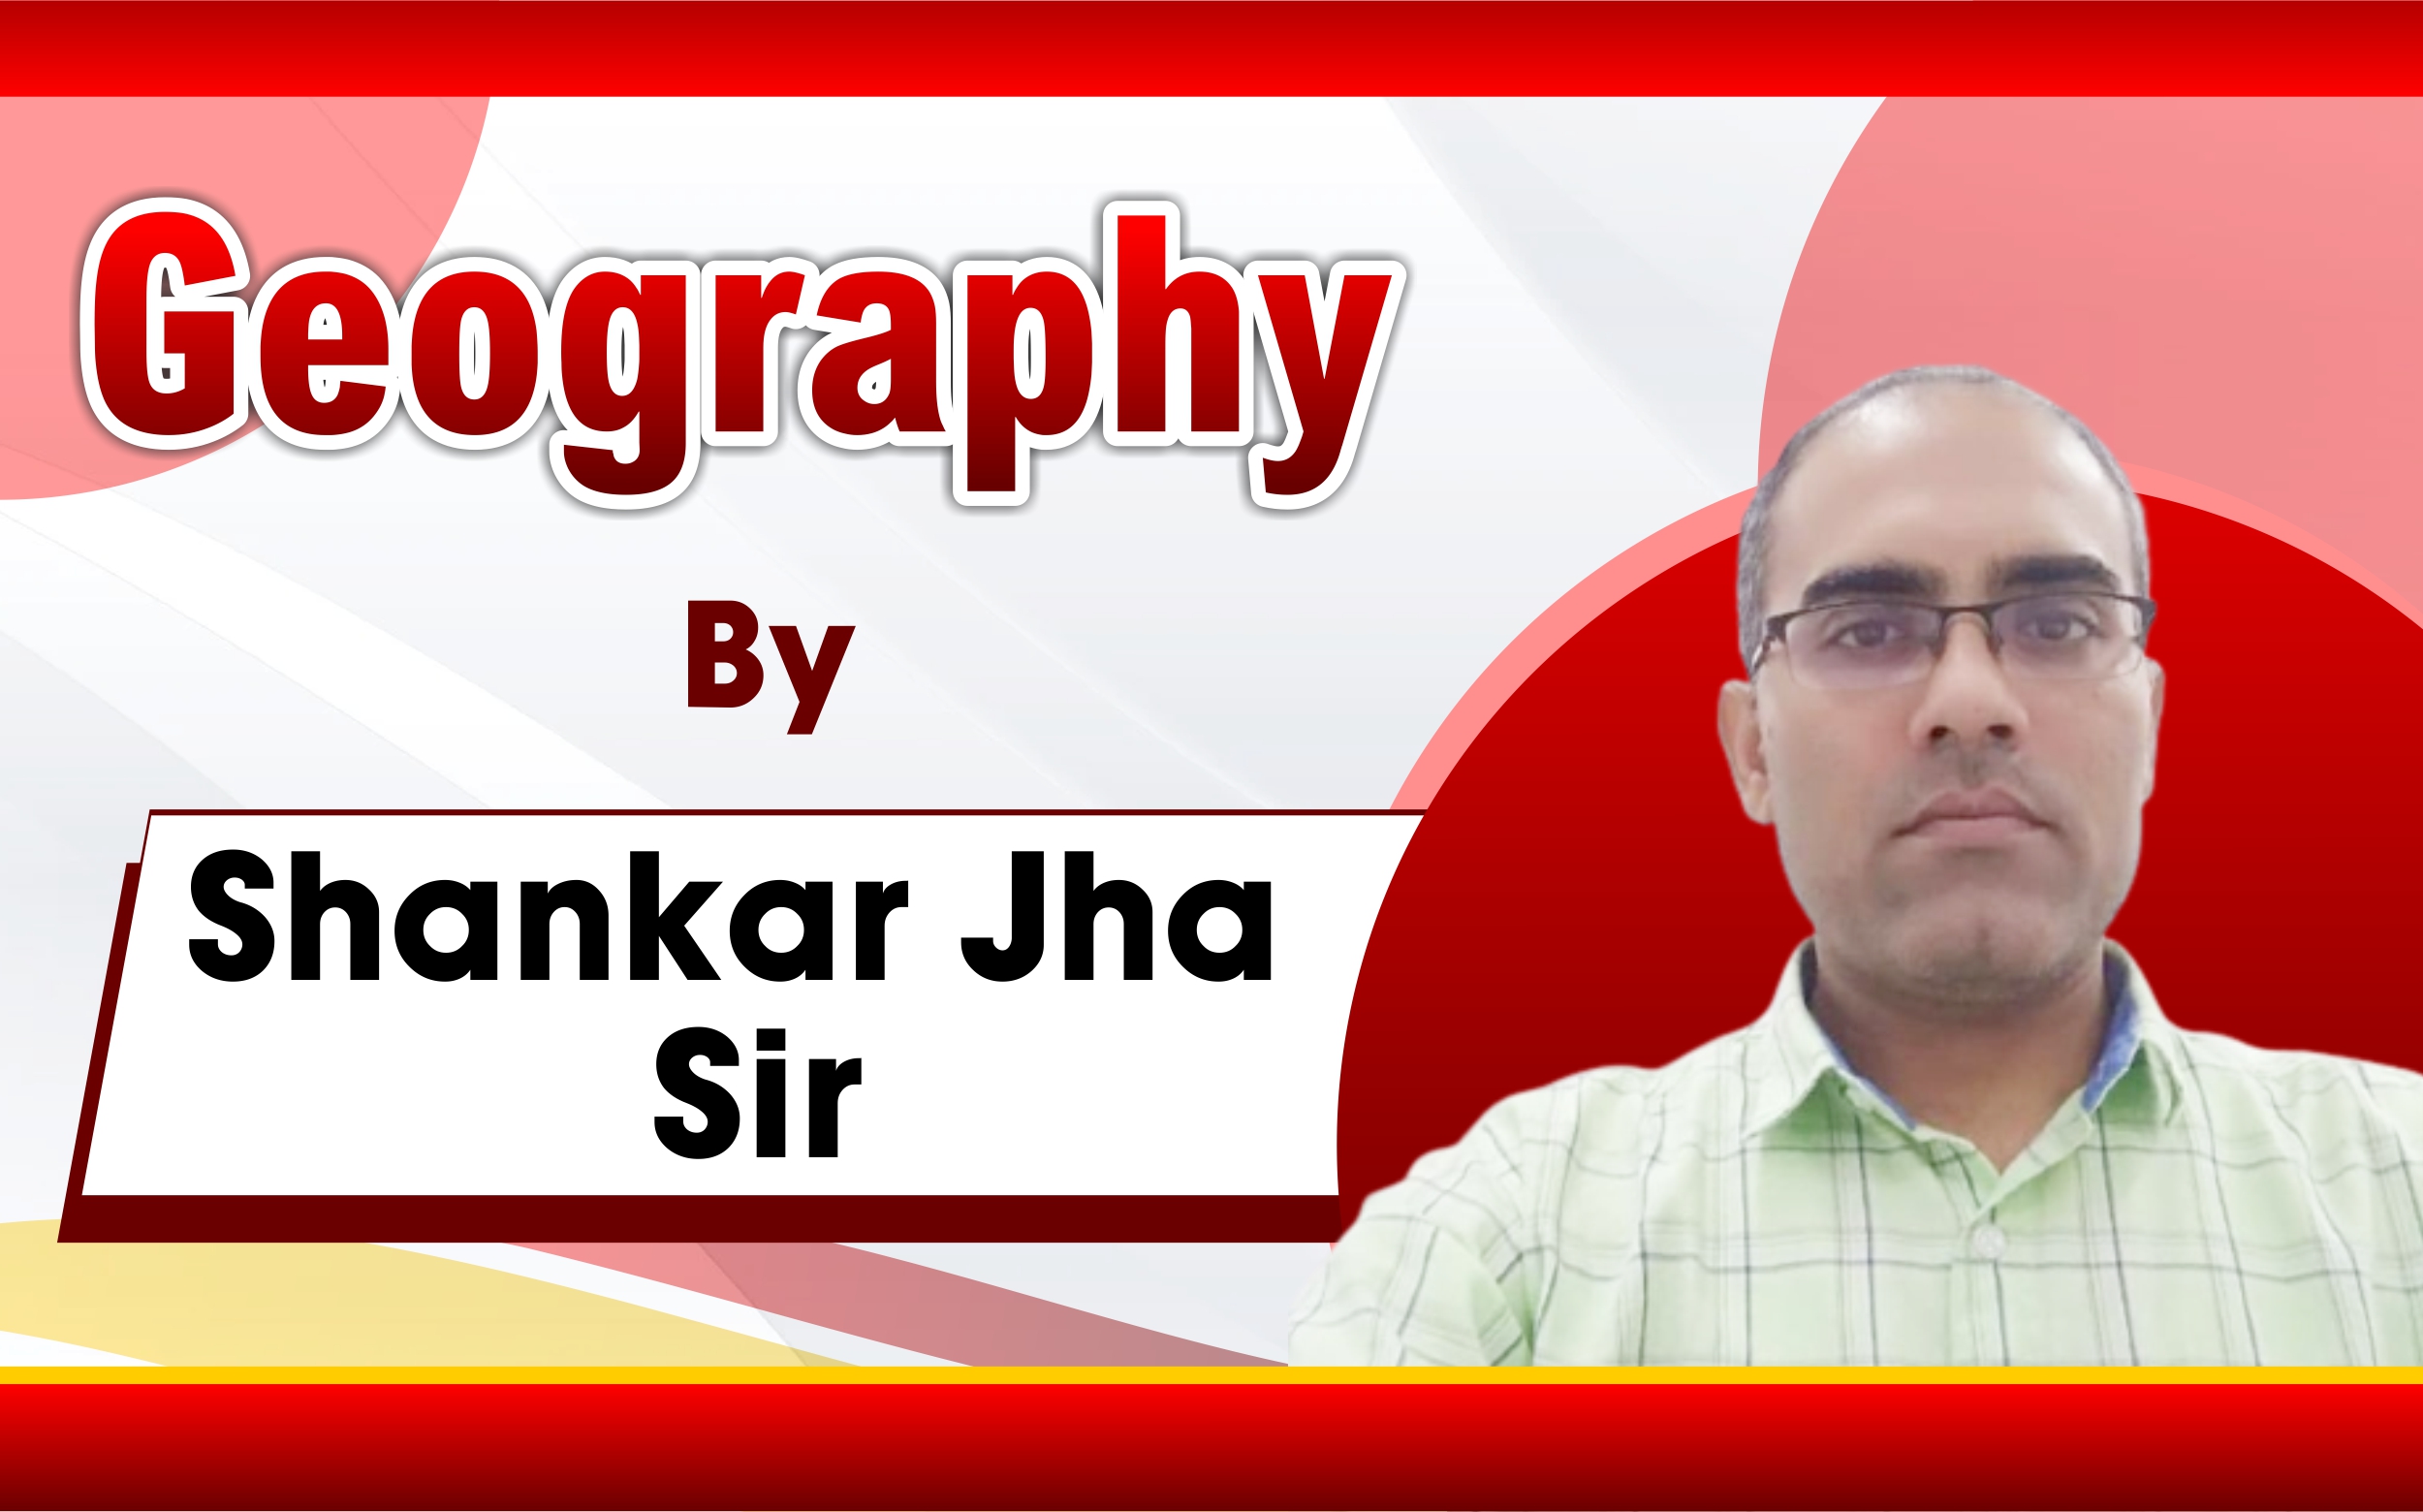 Shankar Jha